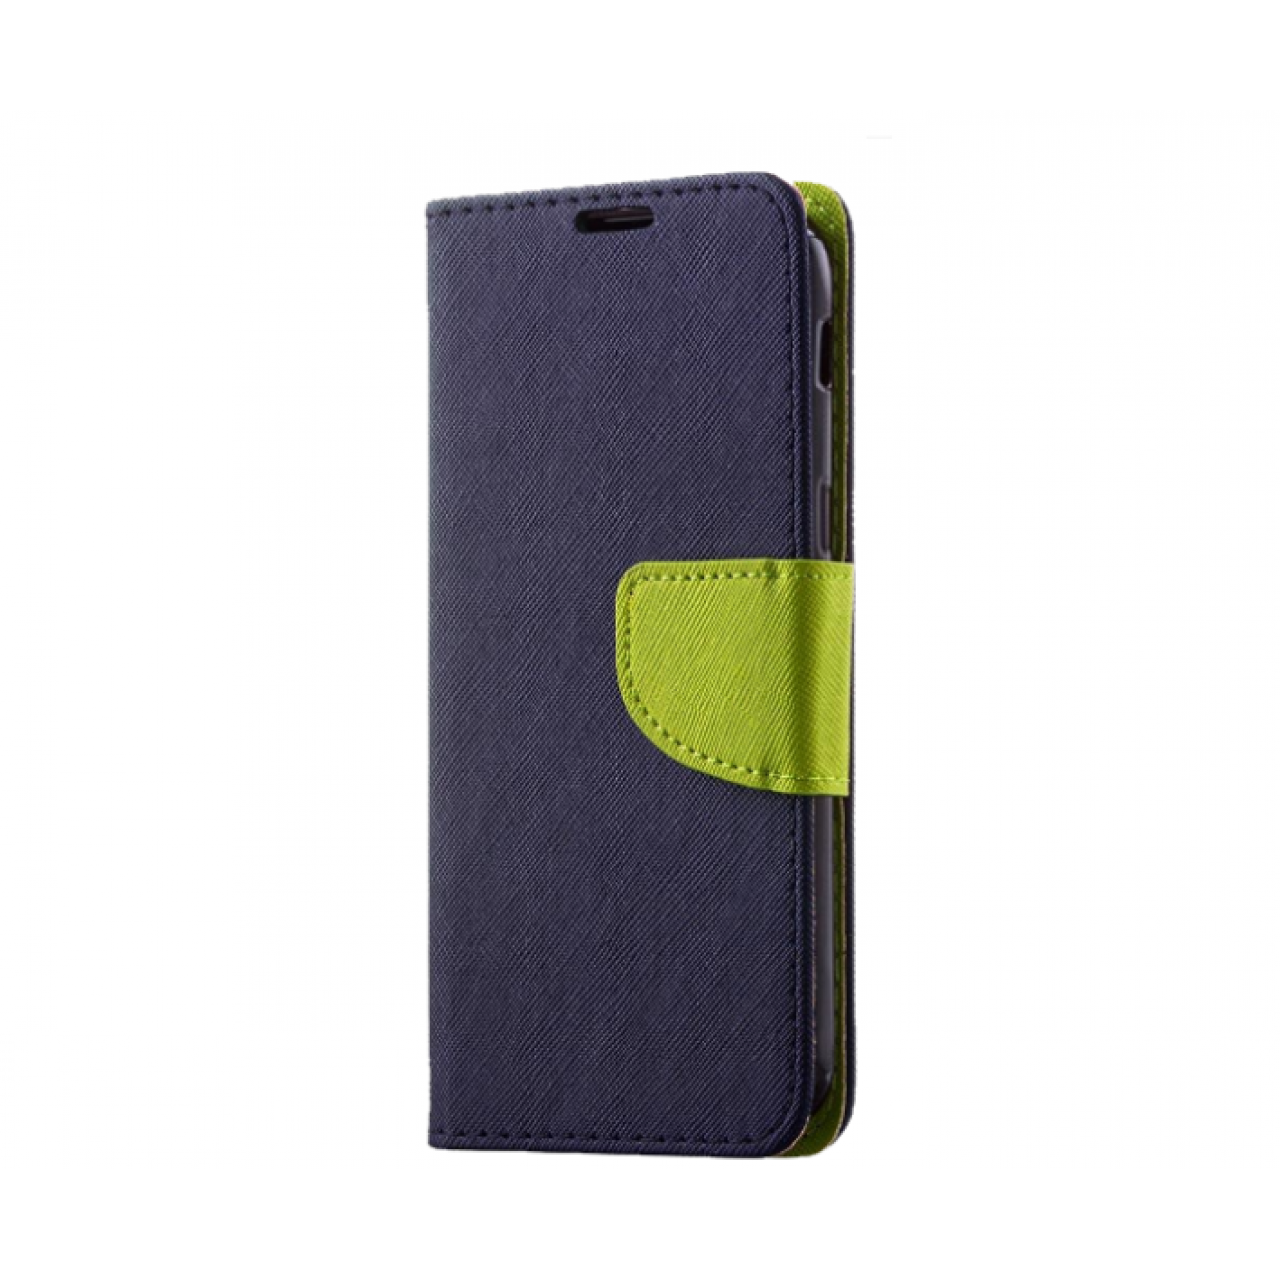 Θήκη Huawei P20 Lite PU Leather Πορτοφόλι flip Fancy Diary - 4103 - Μπλε - OEM